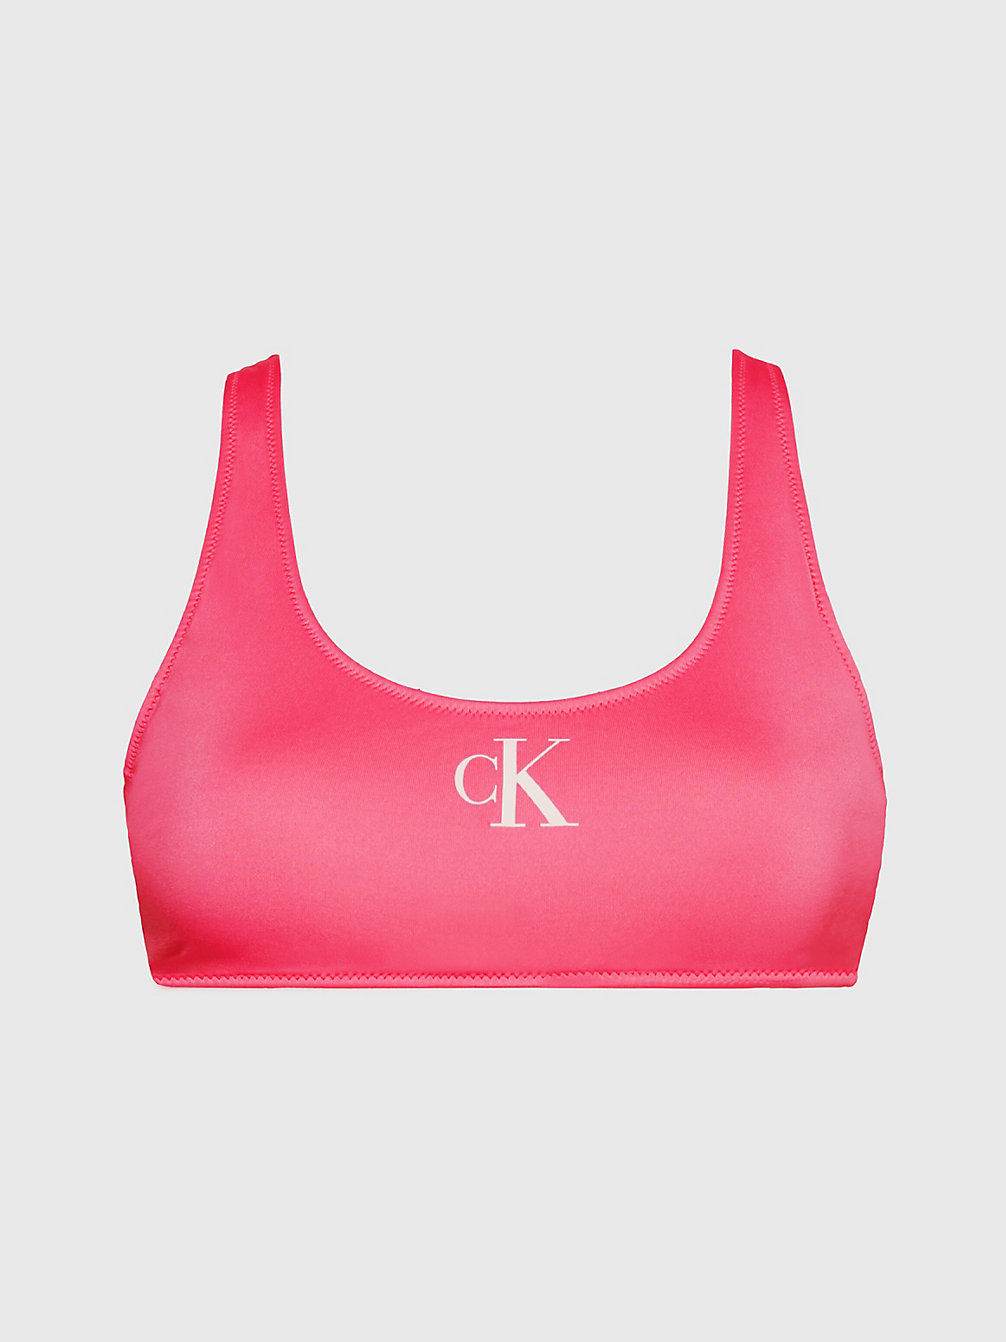 PINK FLASH > Bralette-Bikini-Top – CK Monogram > undefined Damen - Calvin Klein